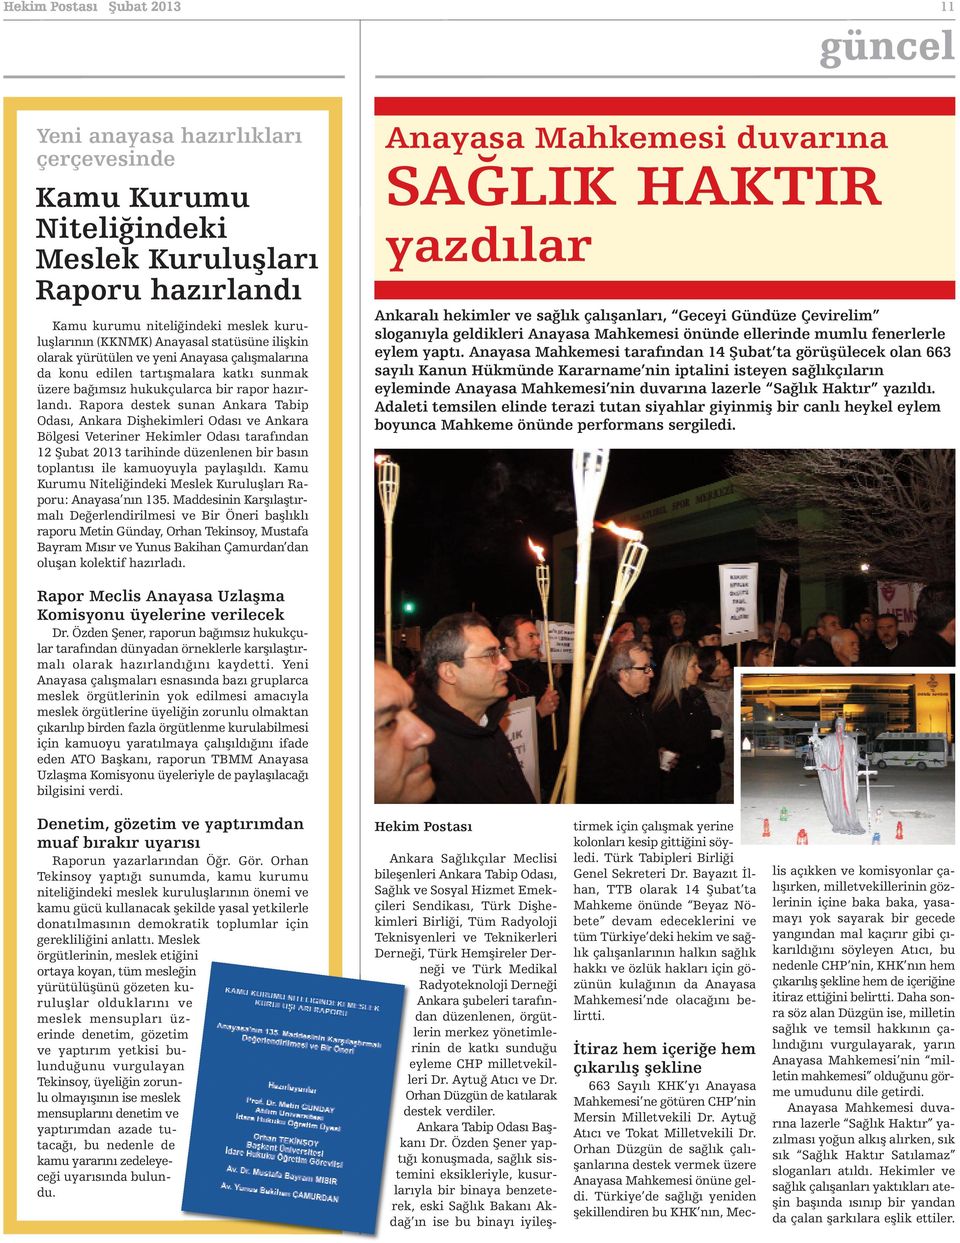 Rapora destek sunan Ankara Tabip Odası, Ankara Dişhekimleri Odası ve Ankara Bölgesi Veteriner Hekimler Odası tarafından 12 Şubat 2013 tarihinde düzenlenen bir basın toplantısı ile kamuoyuyla